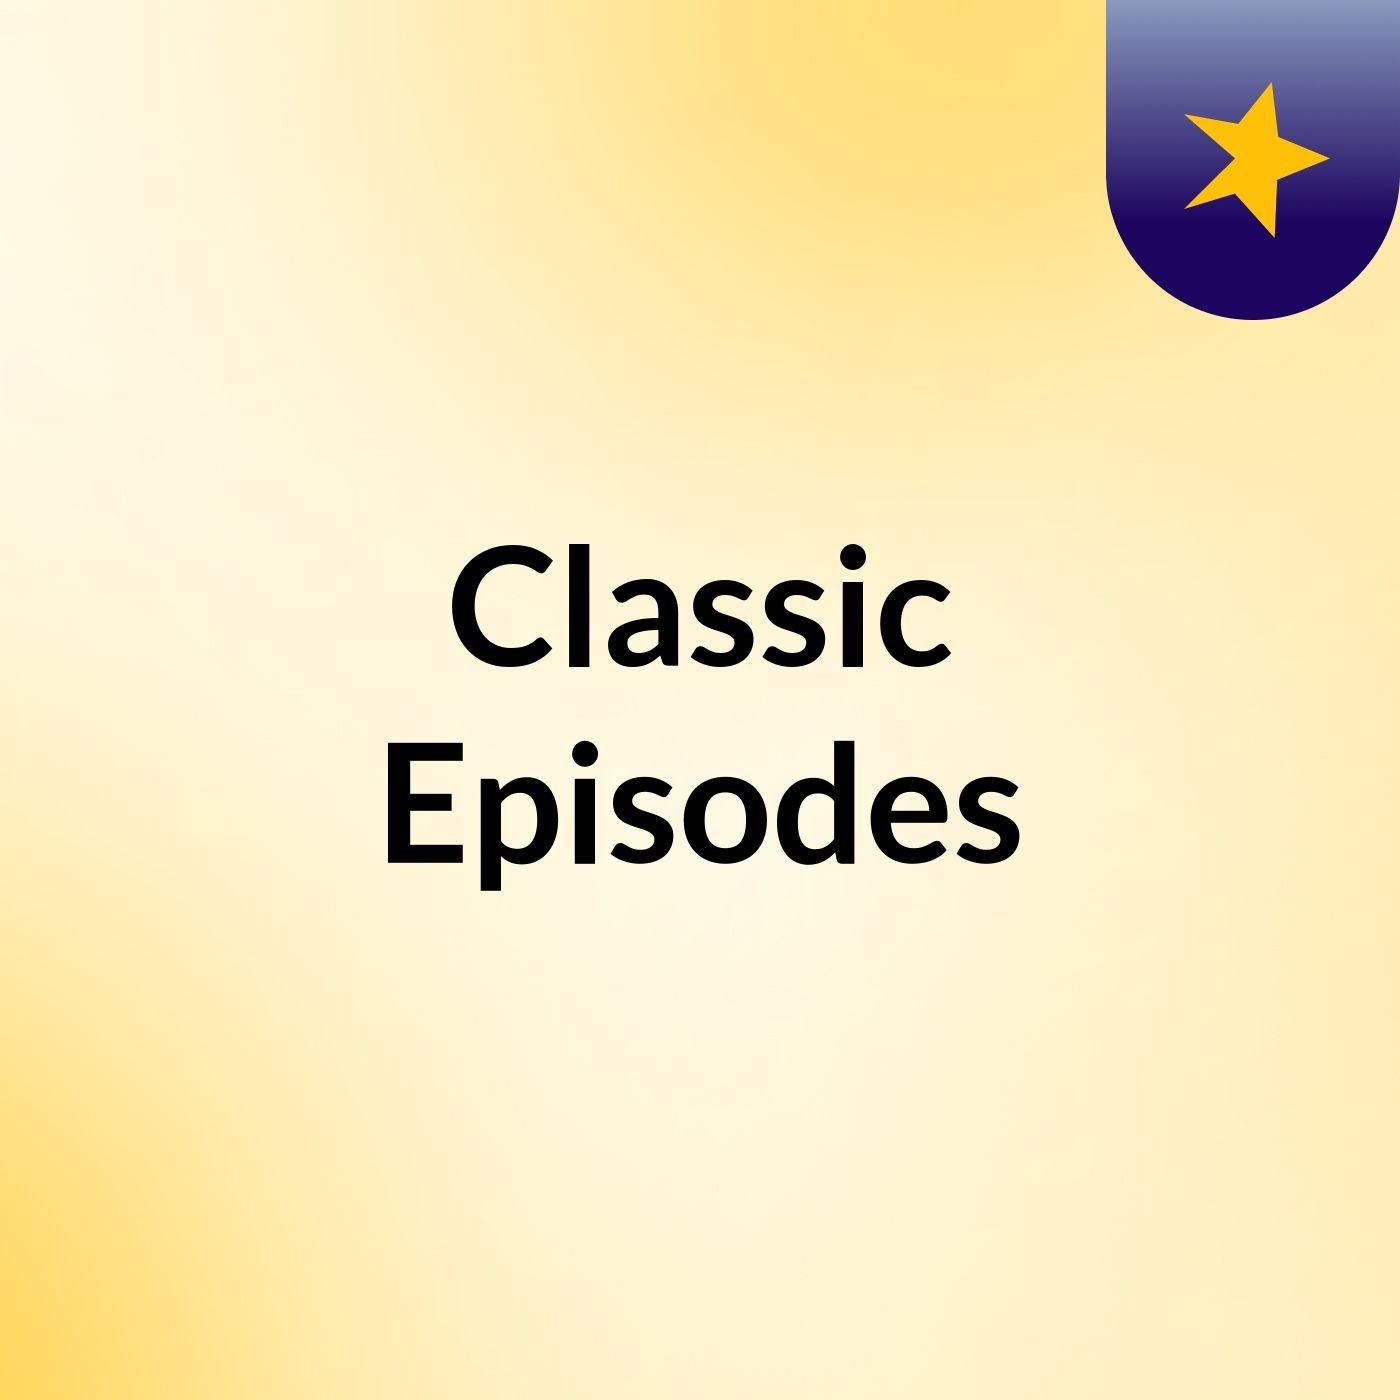 Classic Episodes